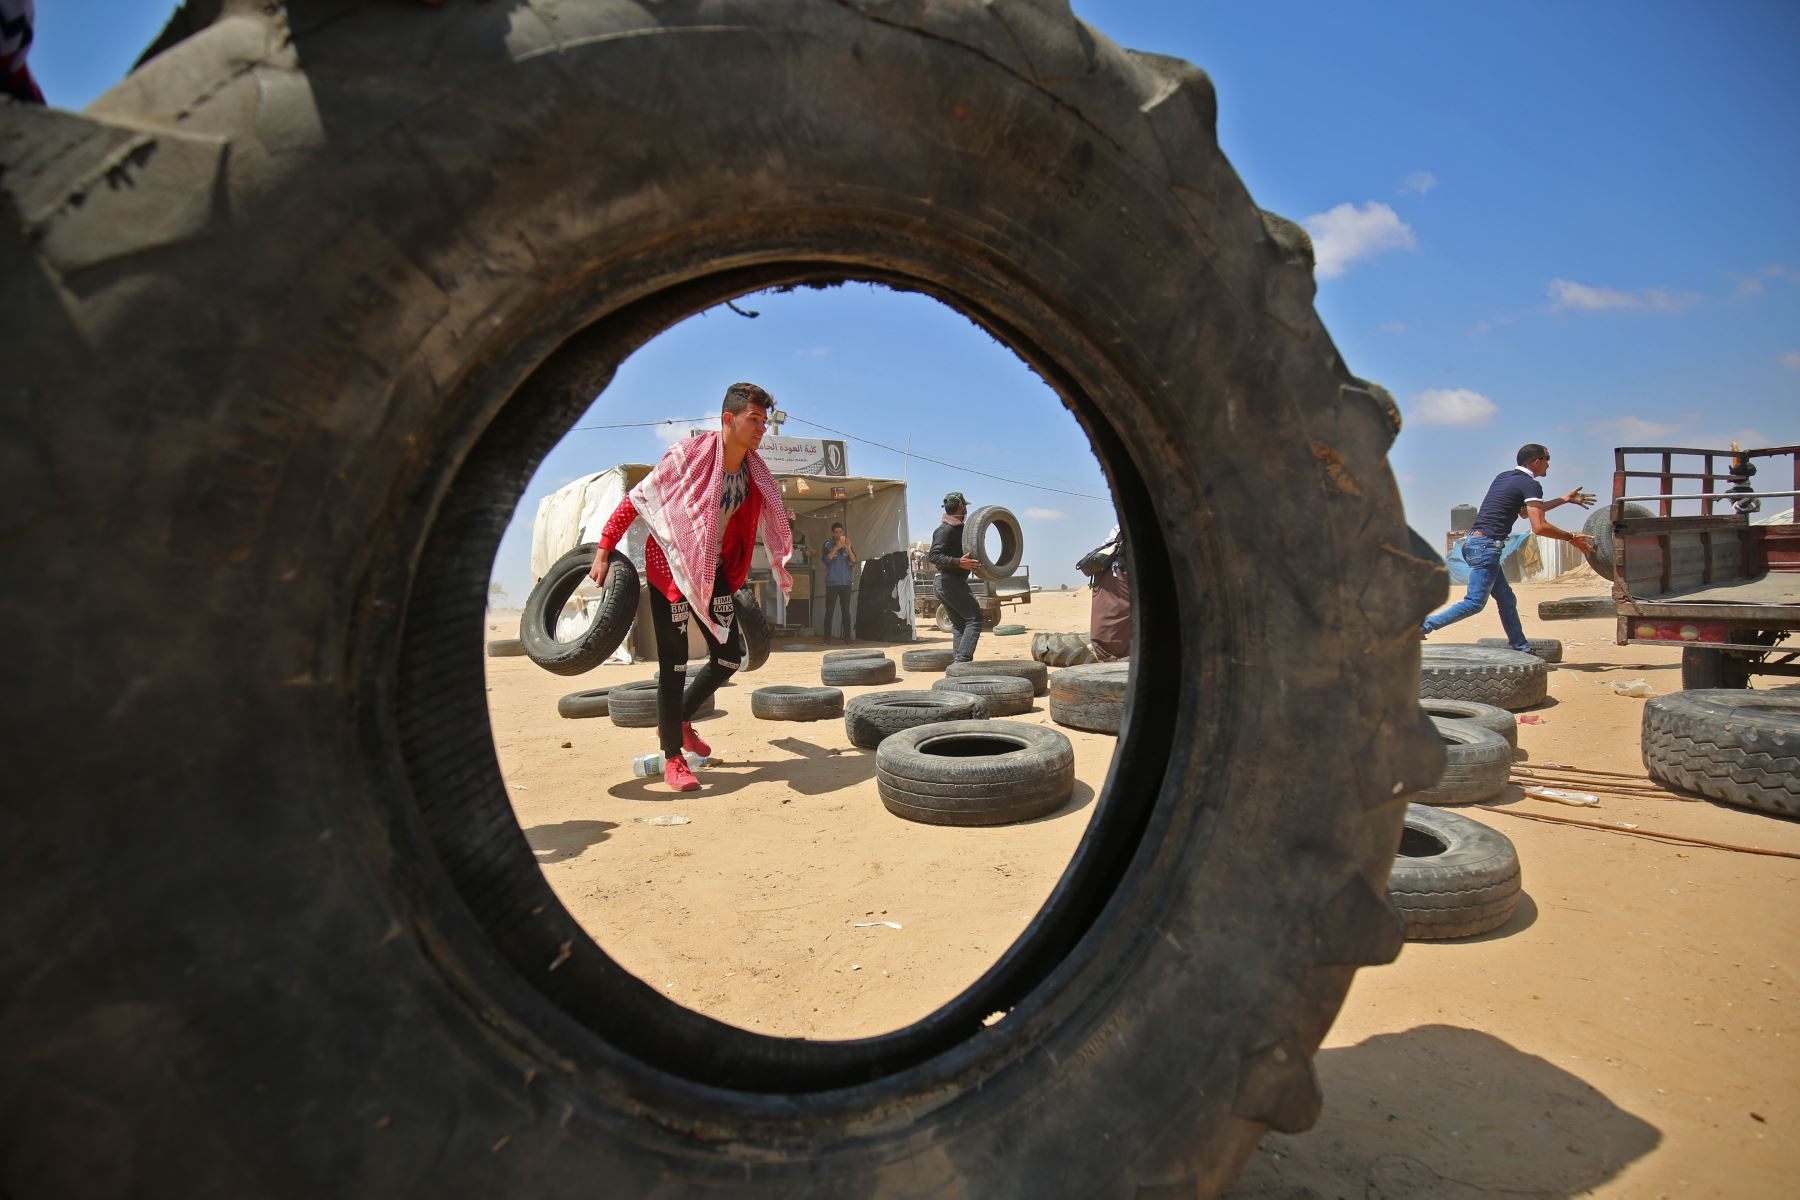 Un palestino recoge neumáticos para llevarlos hacia una barricada improvisada antes de quemarlos durante las manifestaciones cerca de la frontera con Israel, al este de Khan Younis en el sur de la Franja de Gaza. AFP